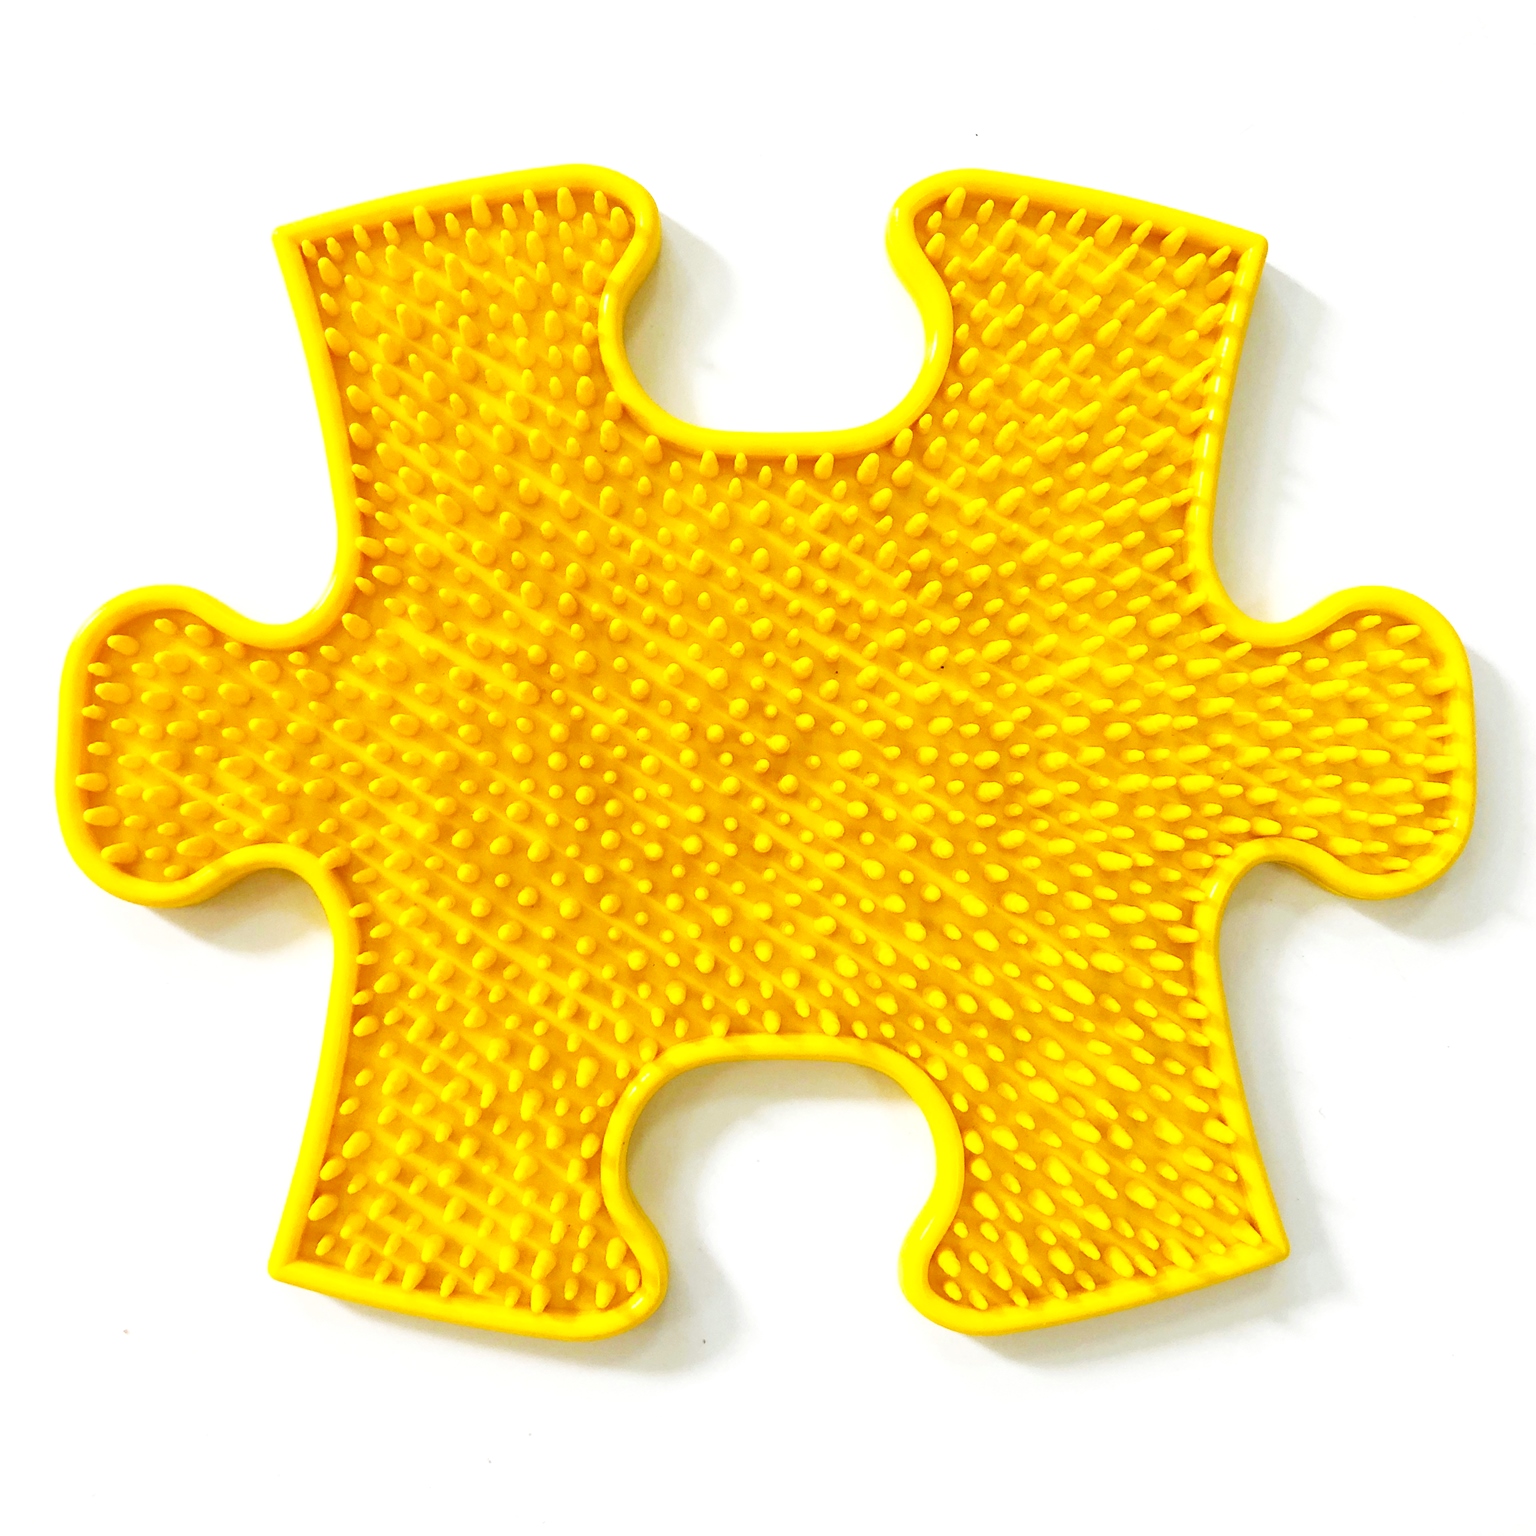 фото Модульный коврик играпол травка маленький желтый